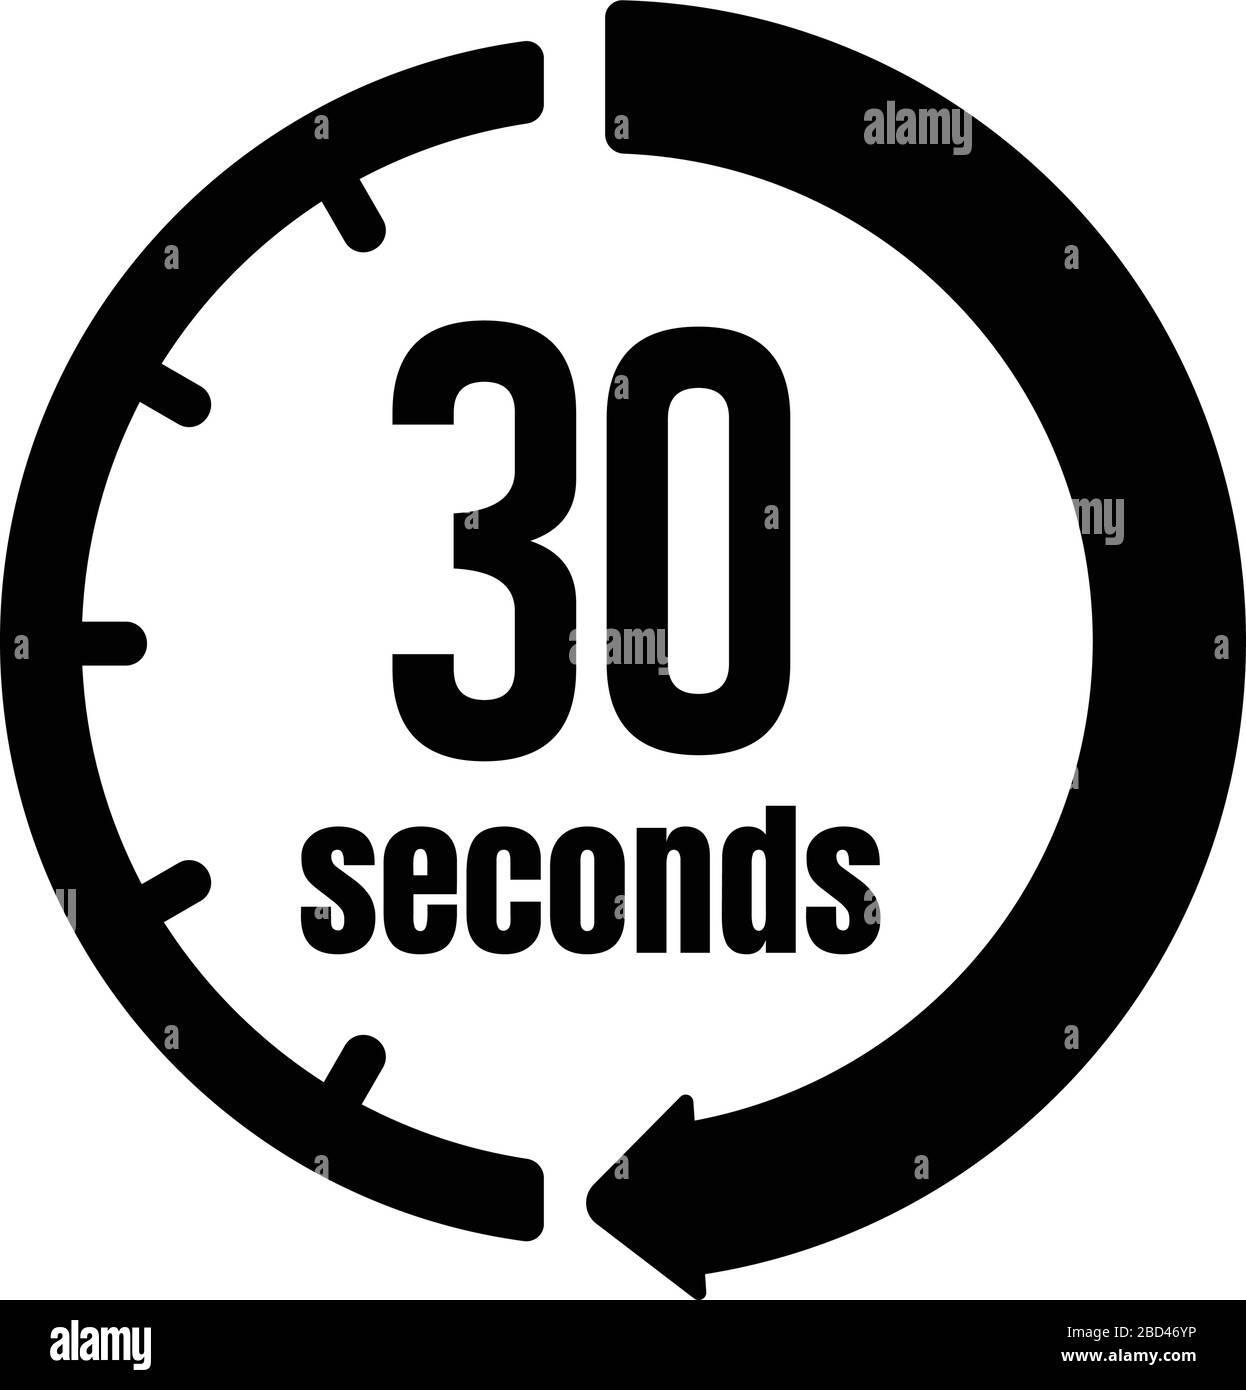 Заведи 30 минут. Значок таймера. Таймер часы 30 секунд. Таймер пиктограмма 30 секунд. Значок 30 минут.